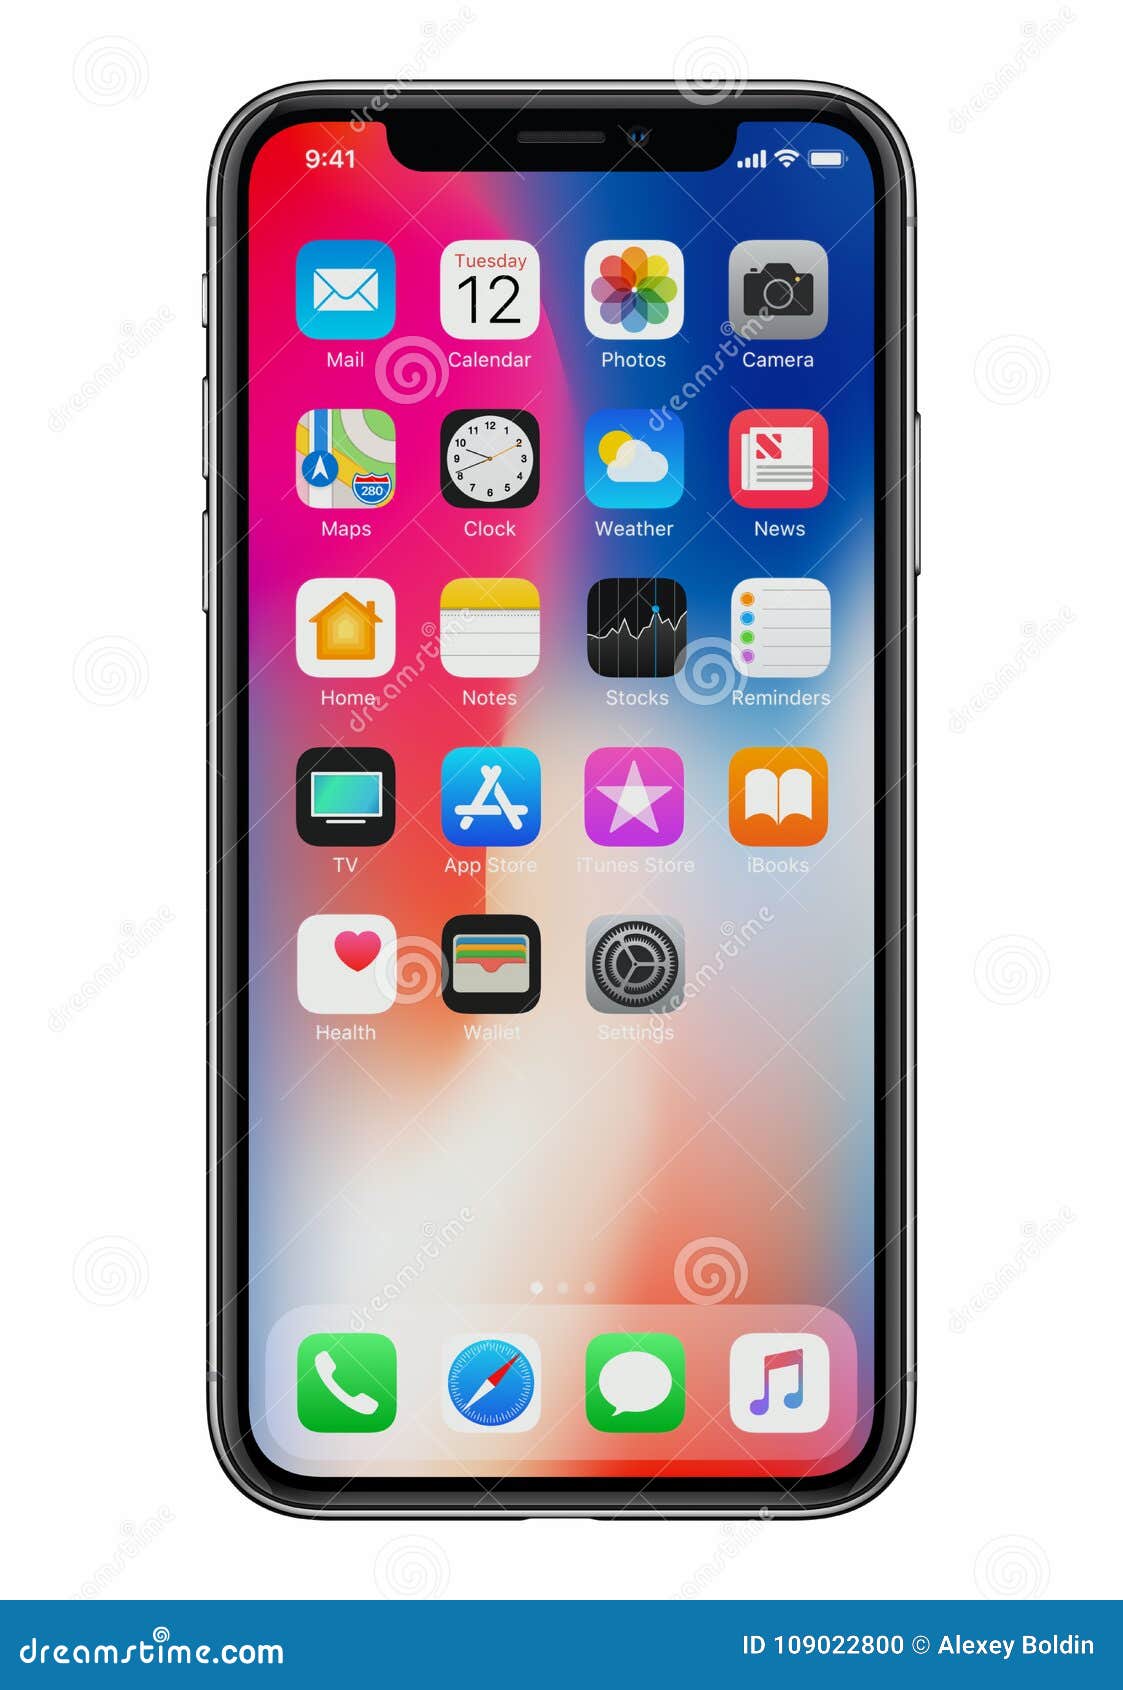 iPhone X mới là một trong những sản phẩm công nghệ đẹp nhất hiện nay, đặc biệt là mẫu điện thoại kết hợp phía trước trên nền trắng. Nếu bạn muốn thưởng thức vẻ đẹp độc đáo của sản phẩm này, hãy ngắm nhìn những hình ảnh iPhone X mới với phía trước trên nền trắng.